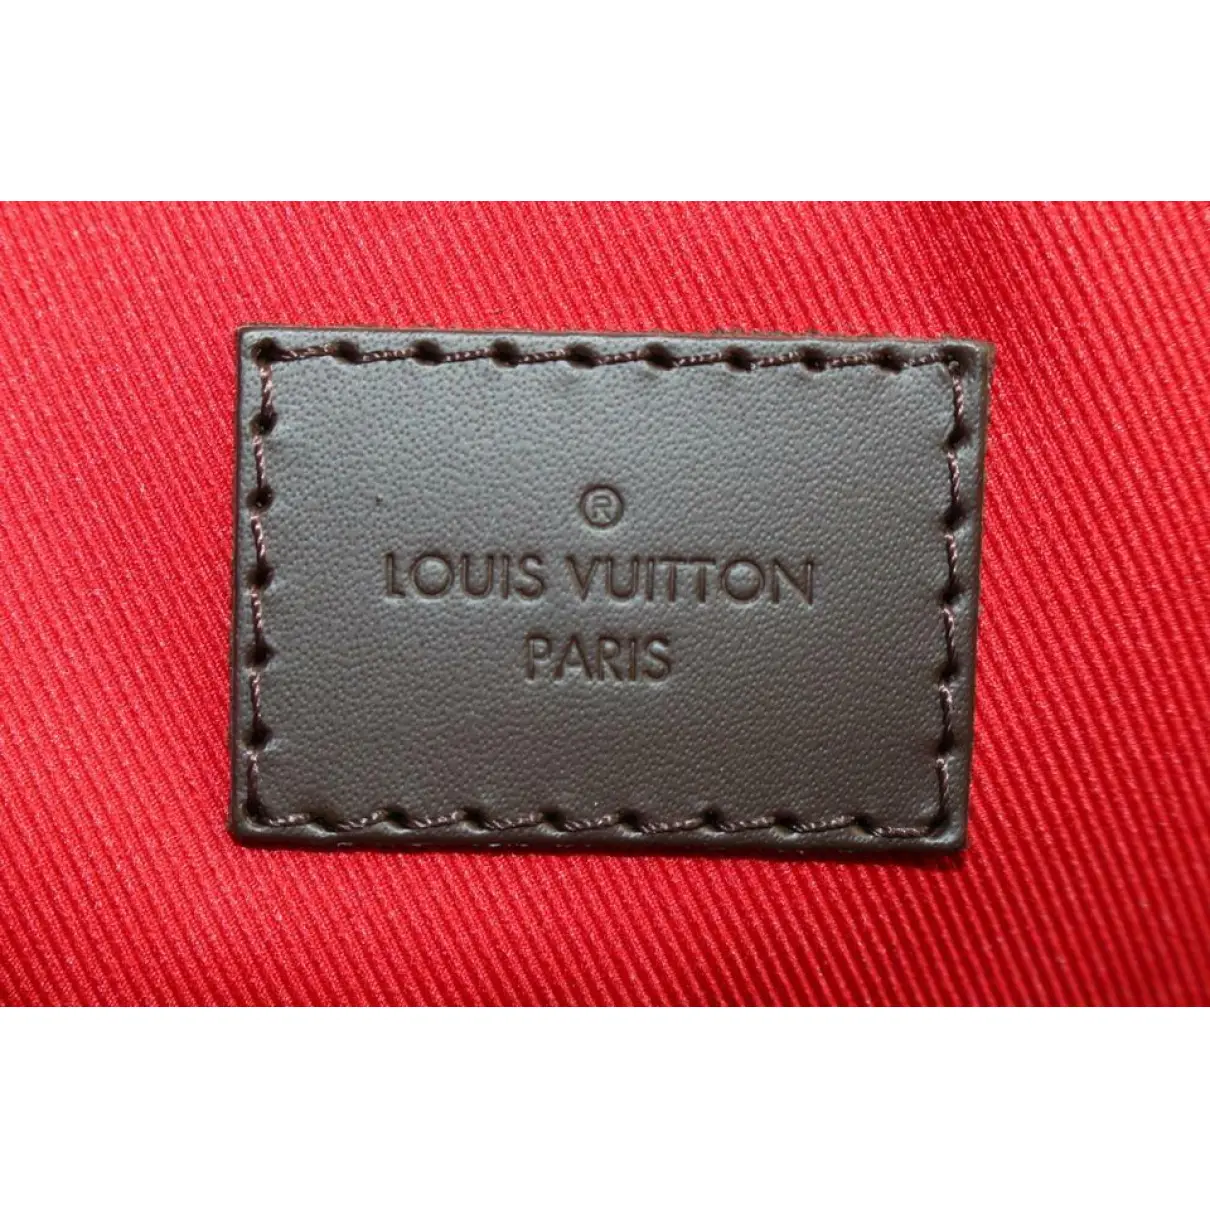 Graceful satchel Louis Vuitton